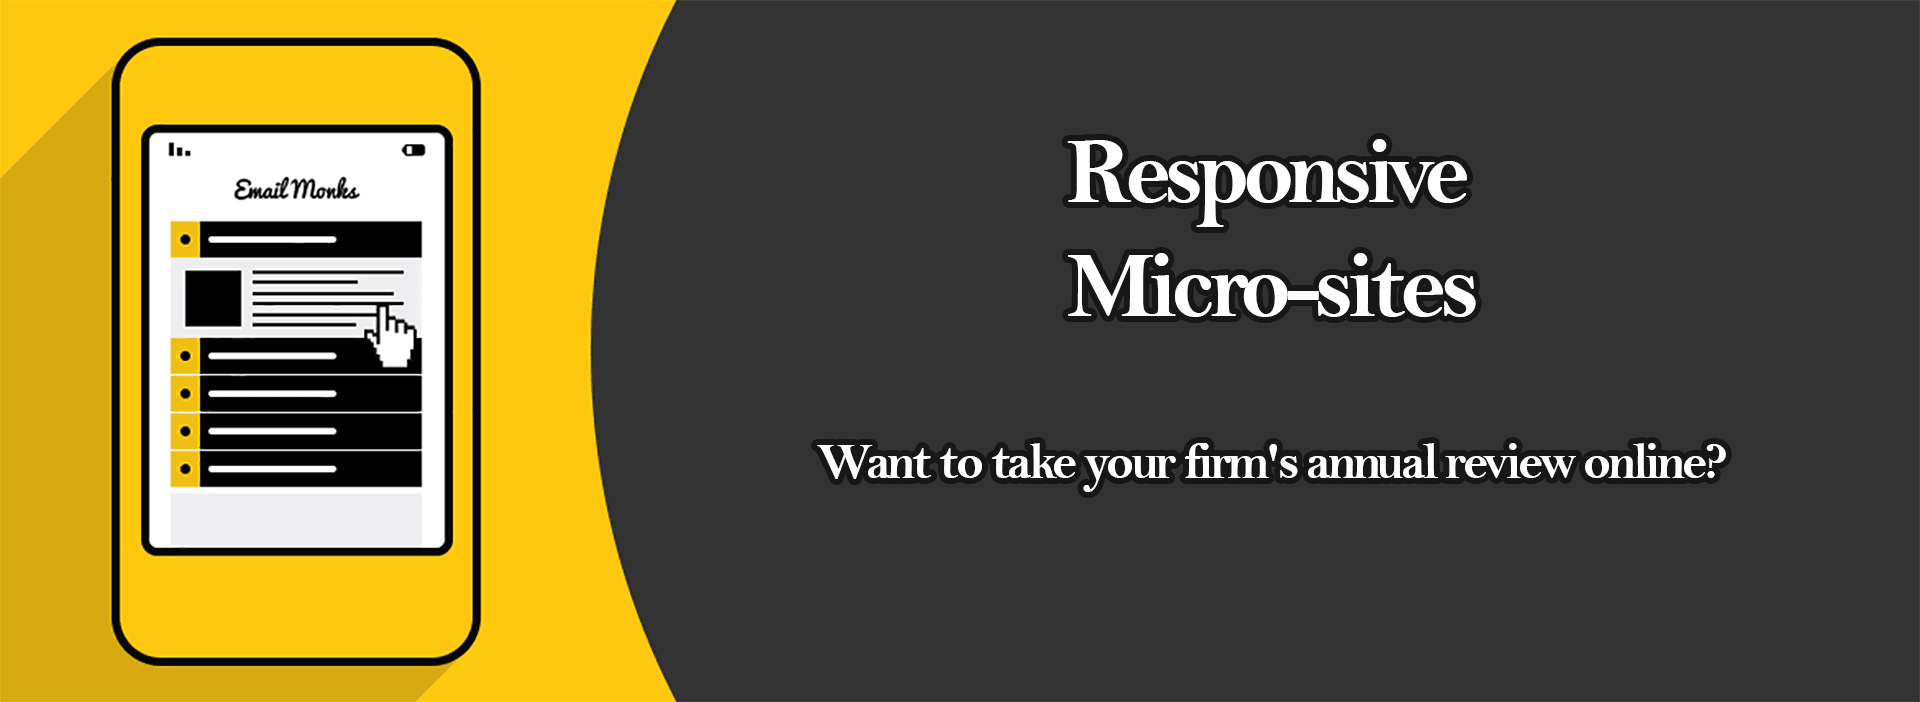 responsive micro-sites